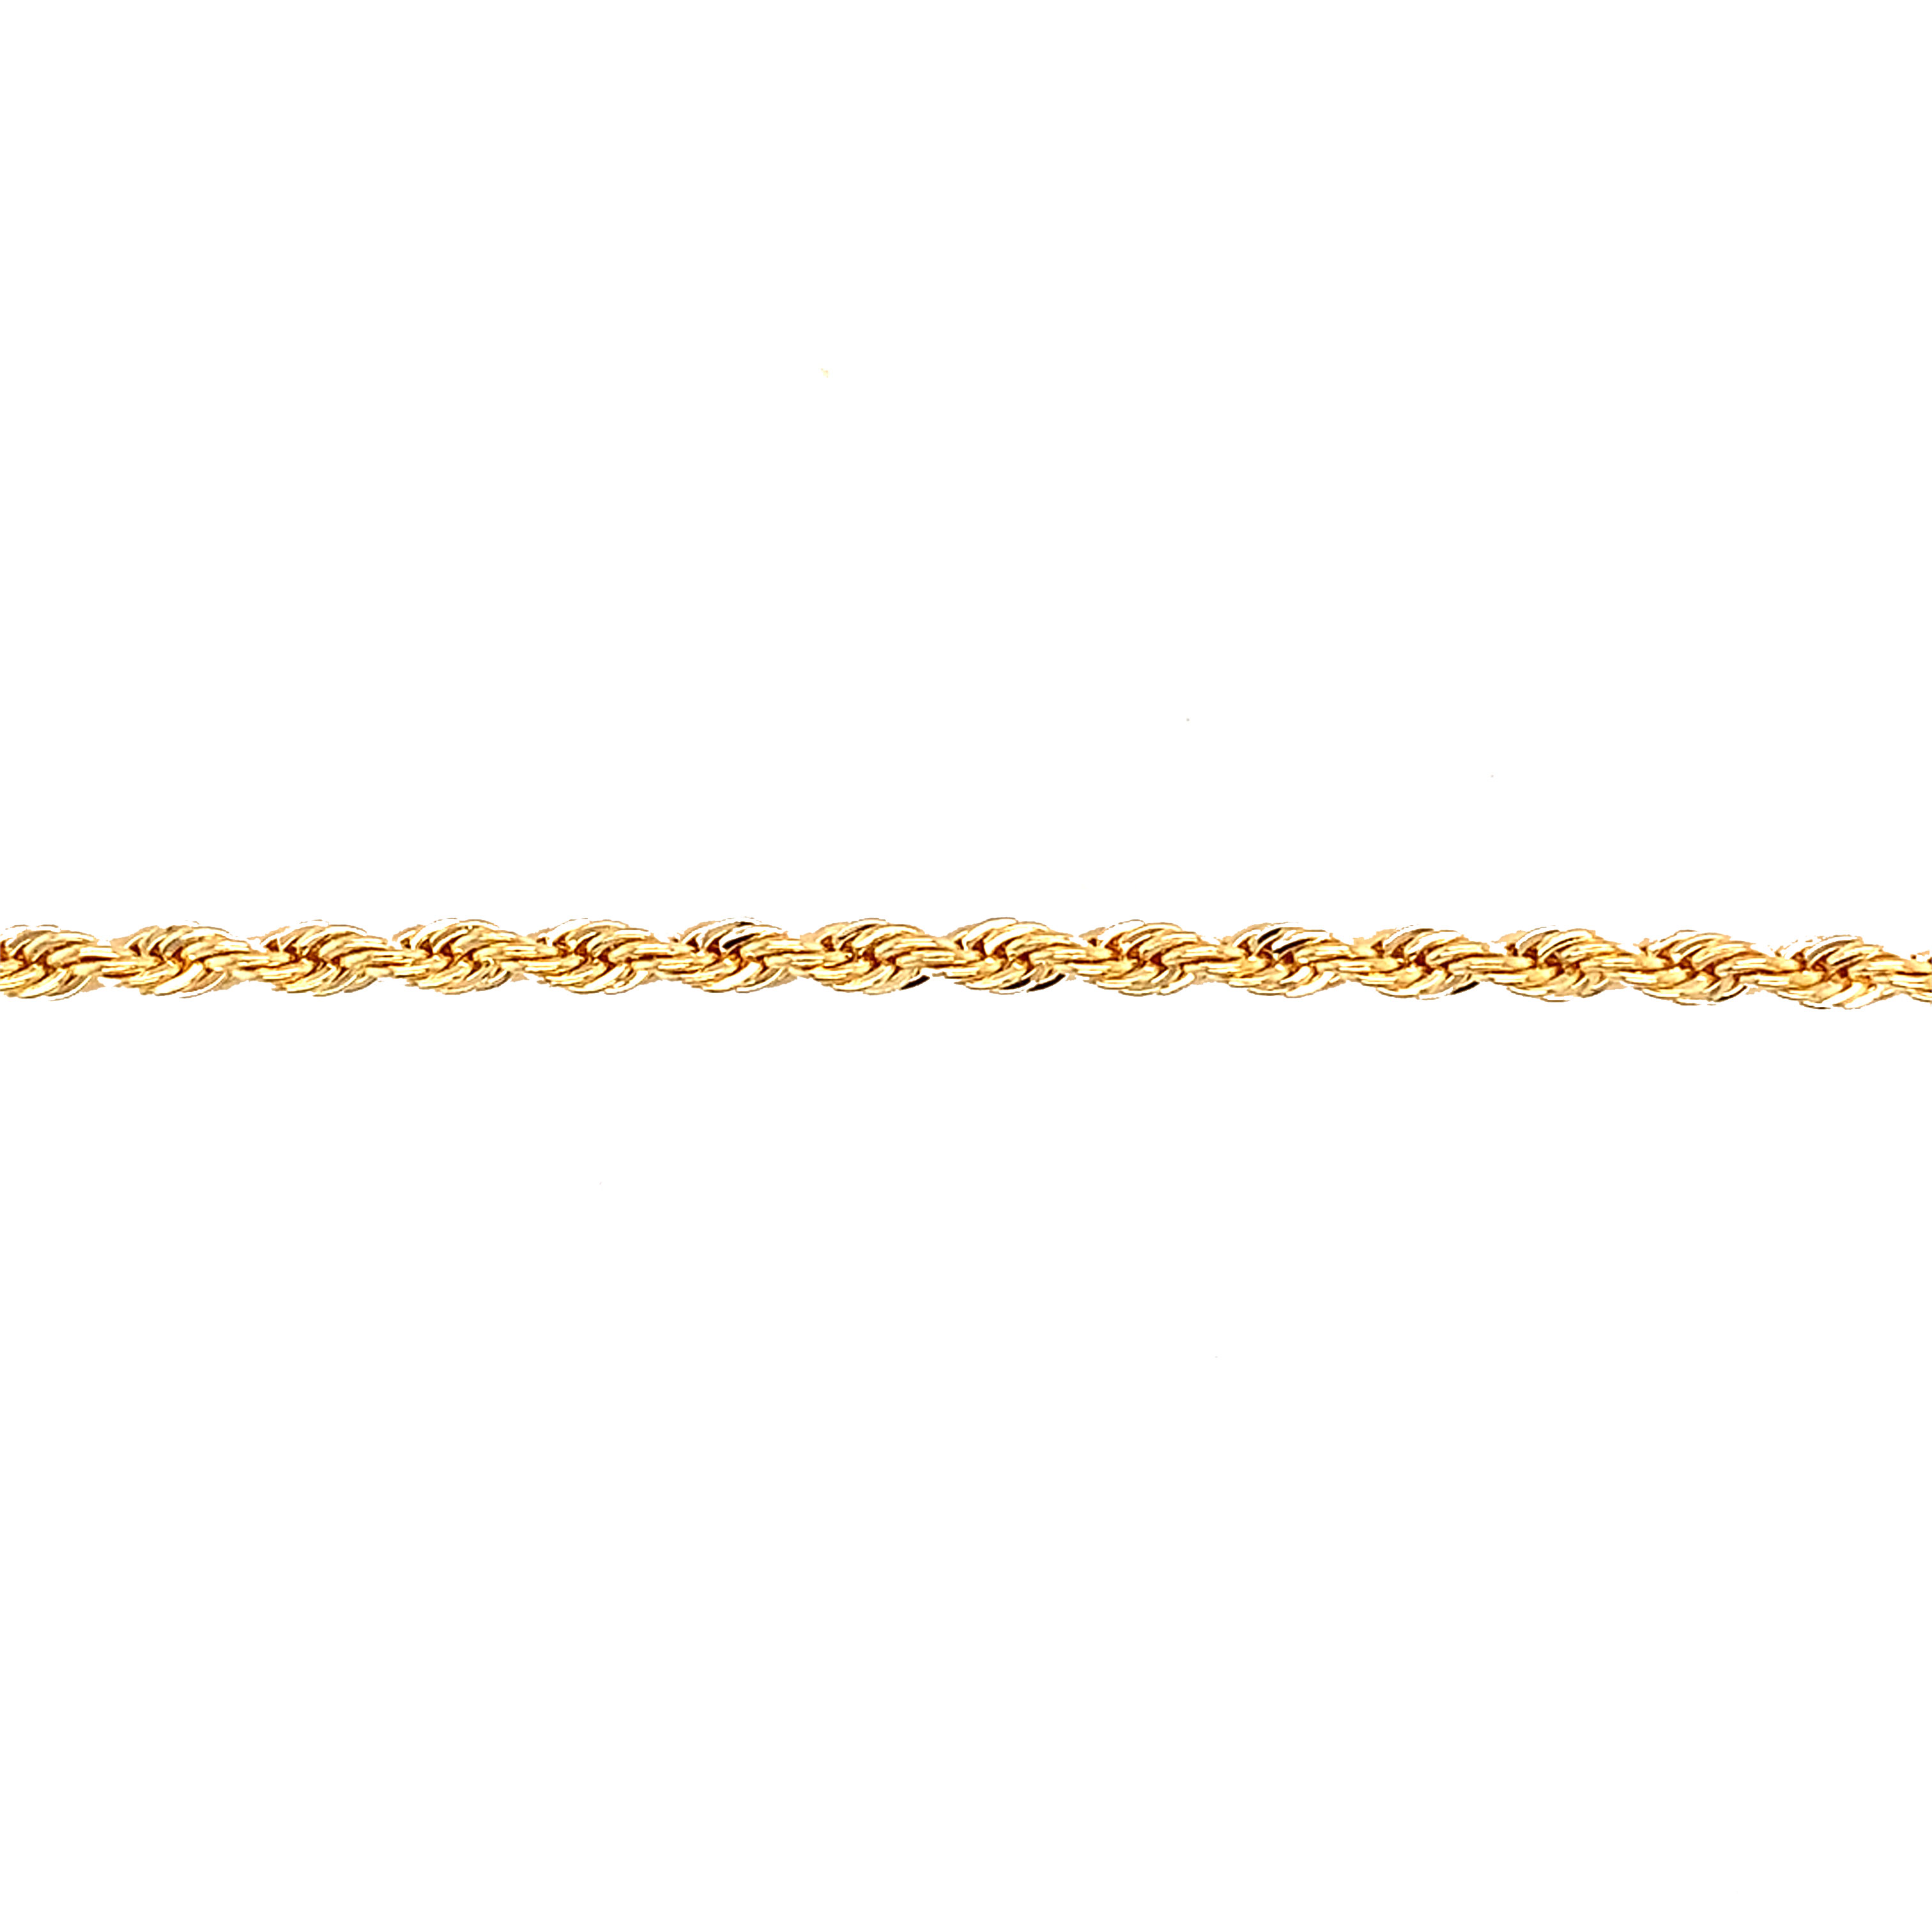 3mm Rope Bracelet - Gold Filled - 6.5"